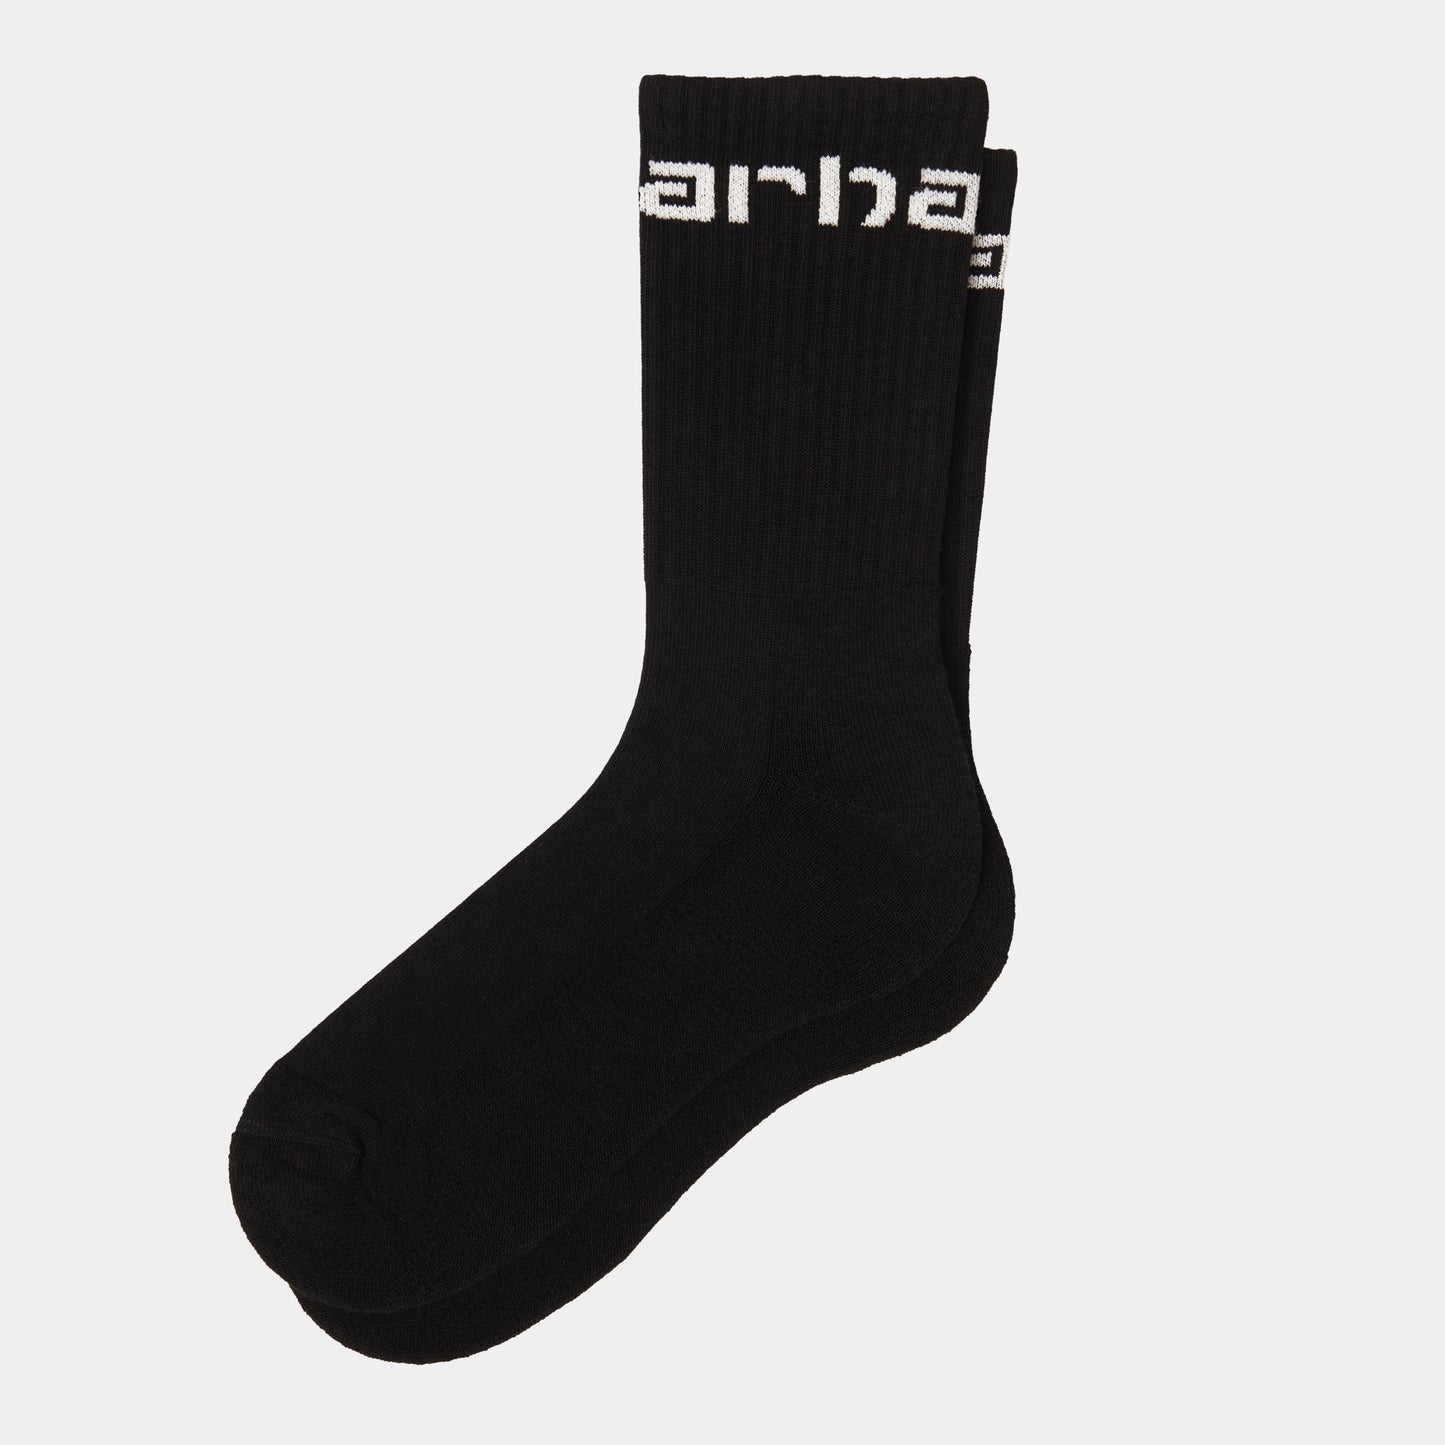 Carhartt Socks - Black / White